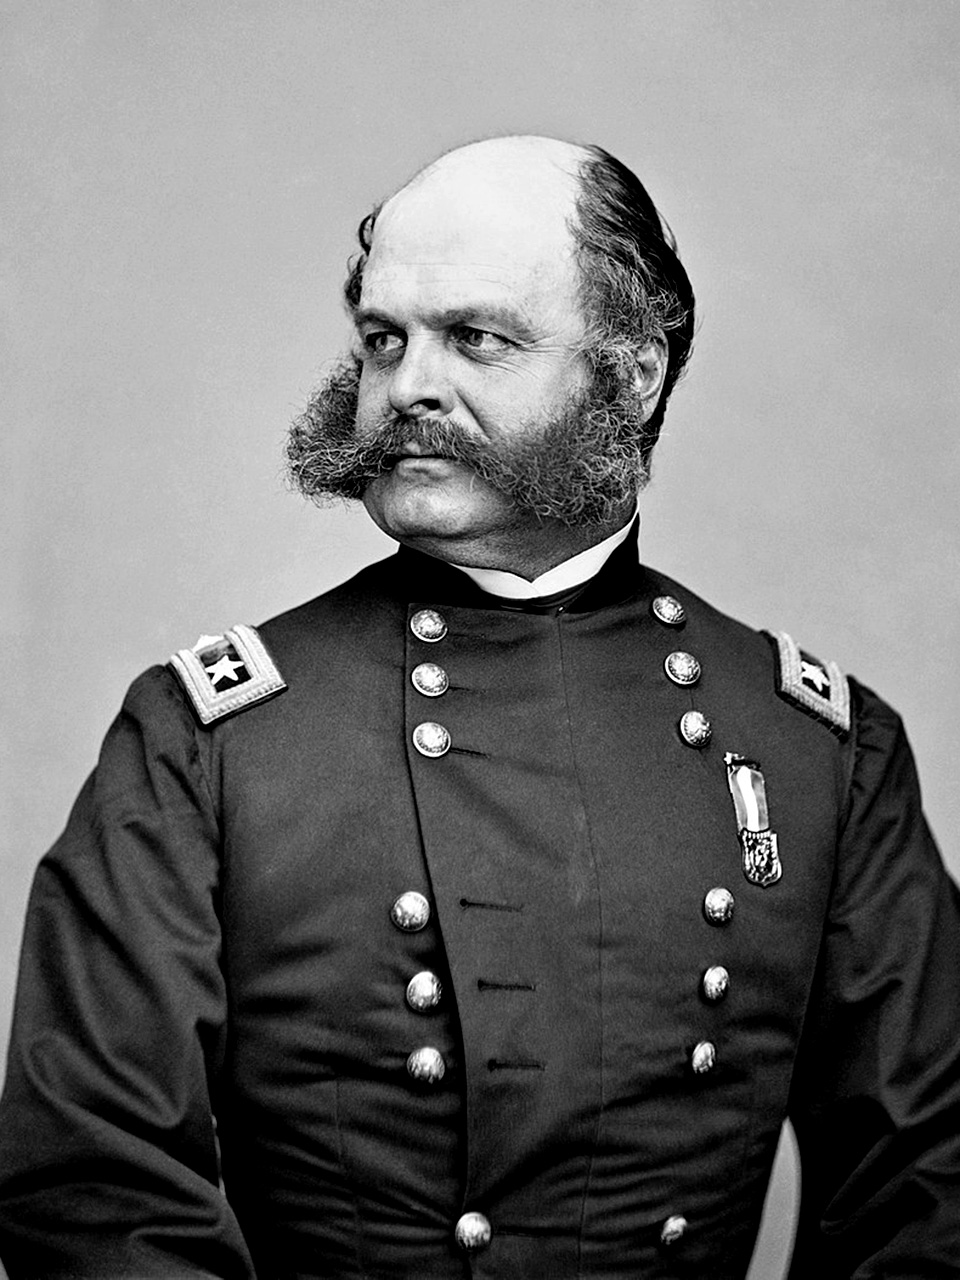 Muškarac s njegovanom bradom i brkovima iz 19. st. u uniformi američke vojske. 